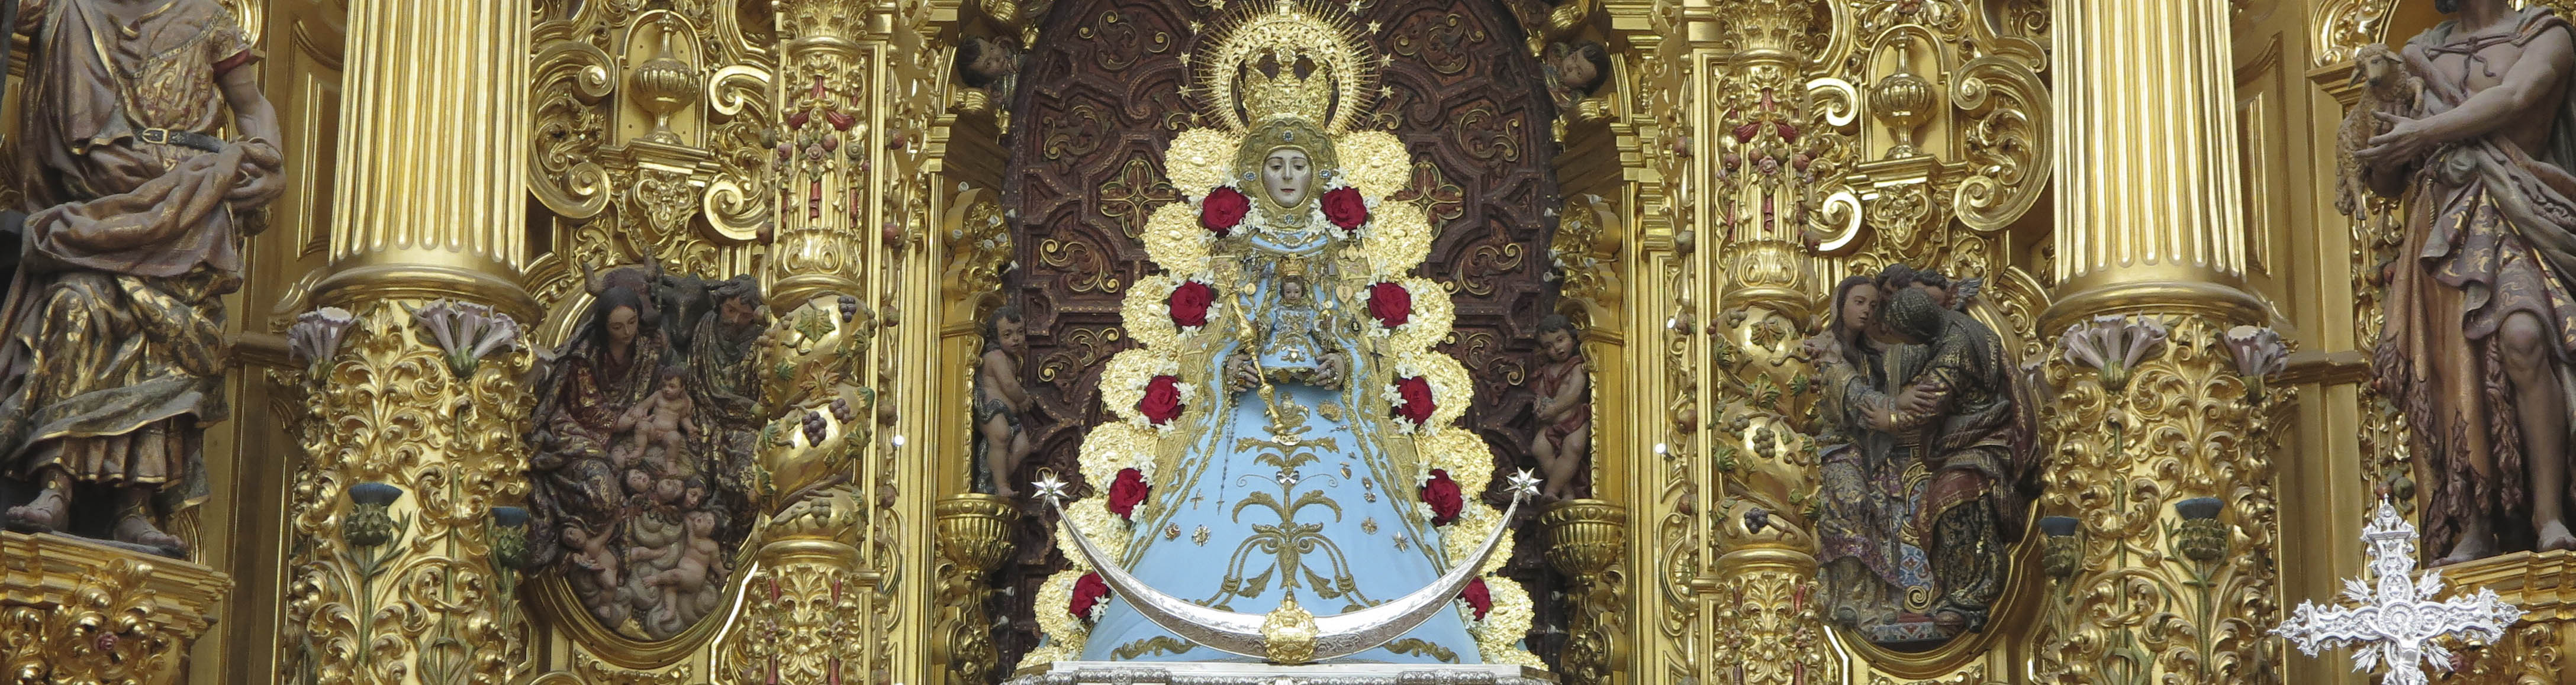 La Virgen del Rocío luce en su altar las galas propias para la celebración de la Inmaculada Concepción